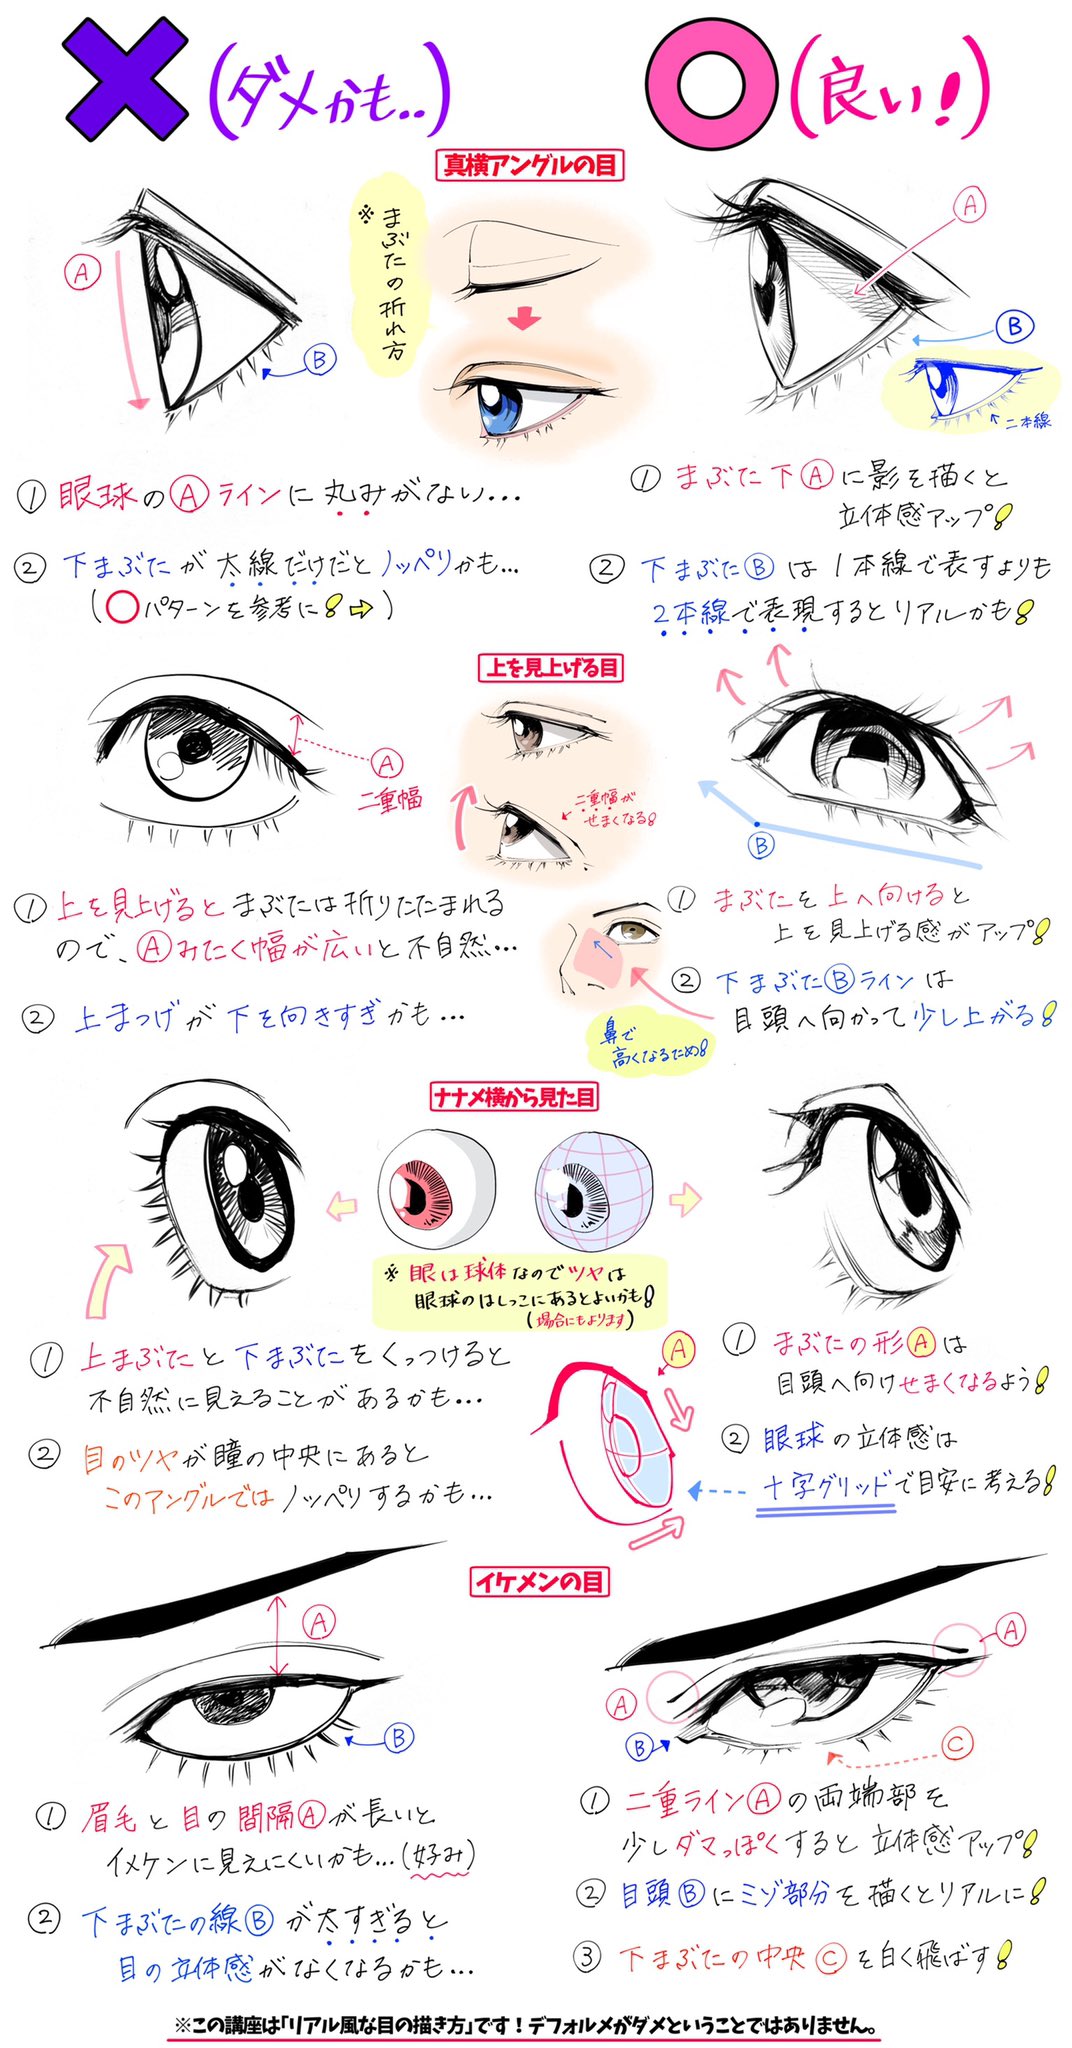 吉村拓也 イラスト講座 瞳の描き方 ペン入れ方法 綺麗な目の線画 が上達するための ダメかも と 良いかも T Co Bv5hhpcr0x Twitter